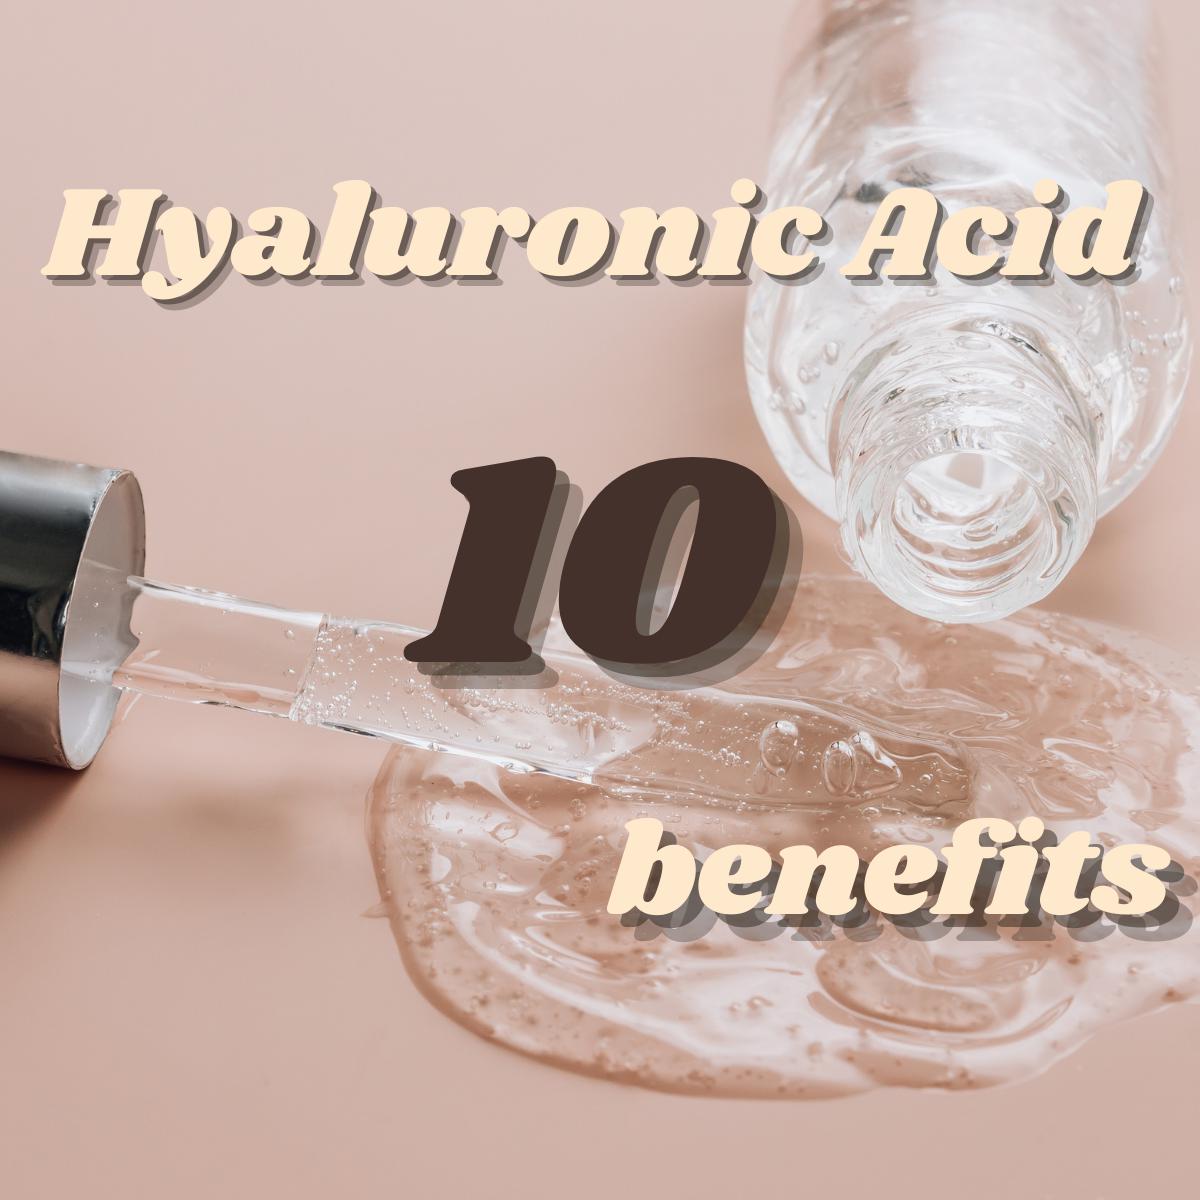 10 benefits of hyaluronic acid